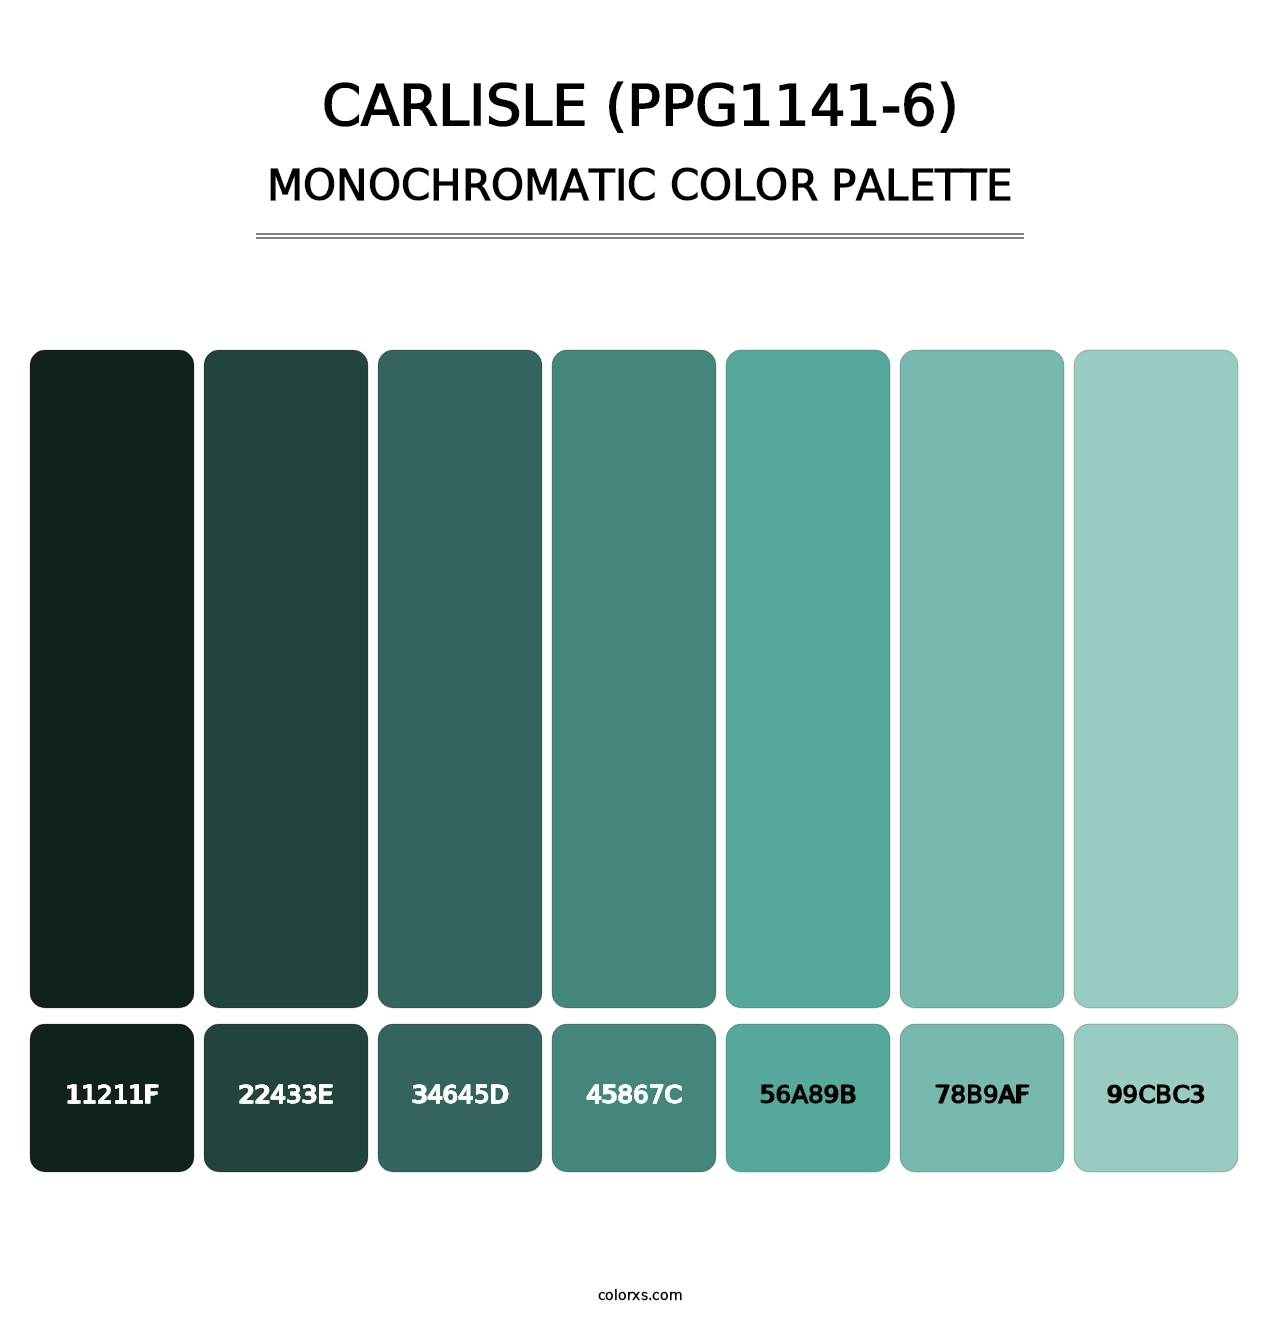 Carlisle (PPG1141-6) - Monochromatic Color Palette